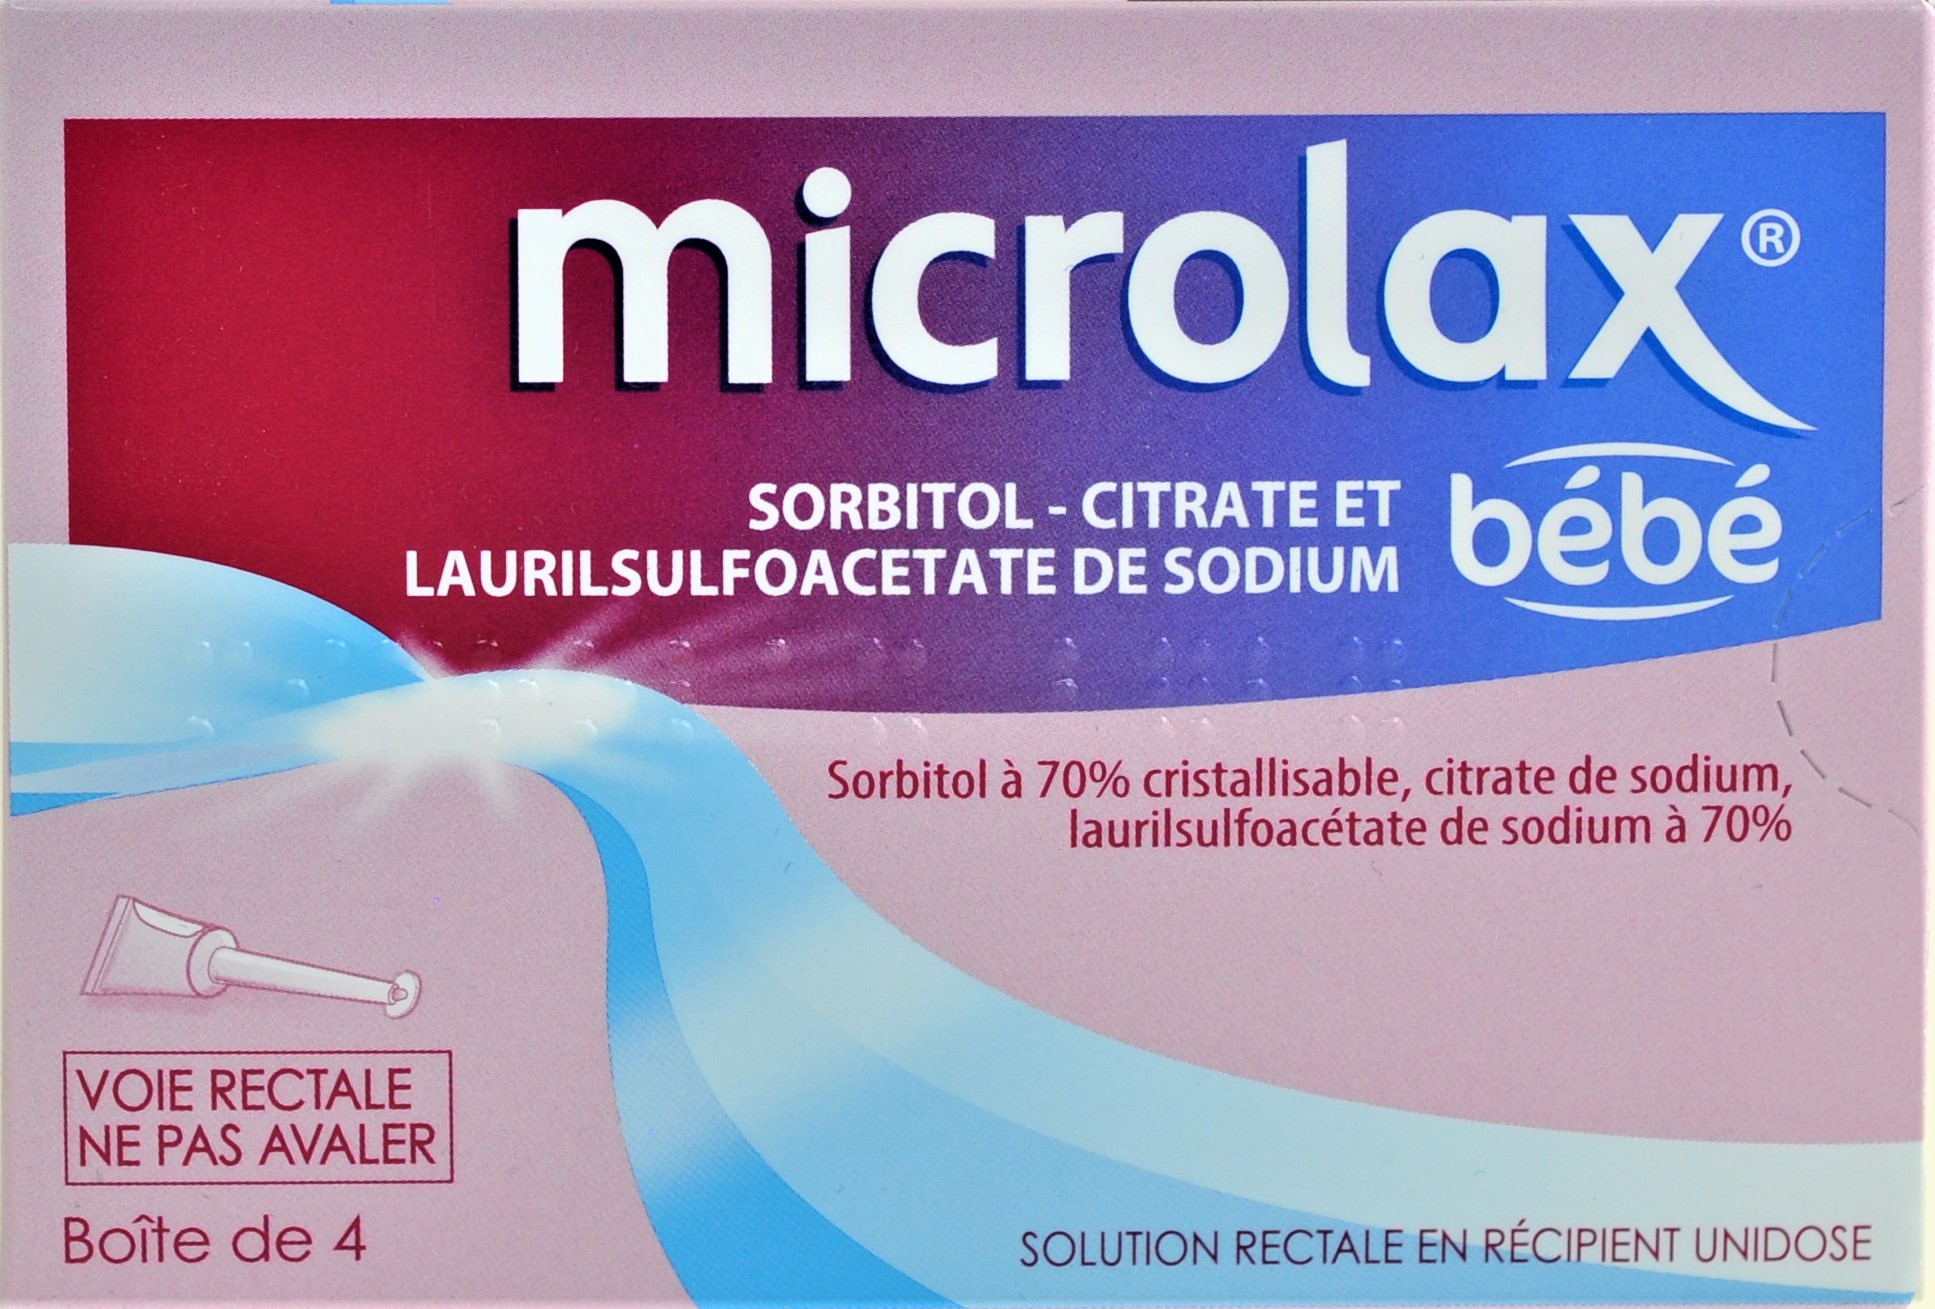 Microlax bébé gel rectal – 4 unidoses 3400935445452 : securemail.fr